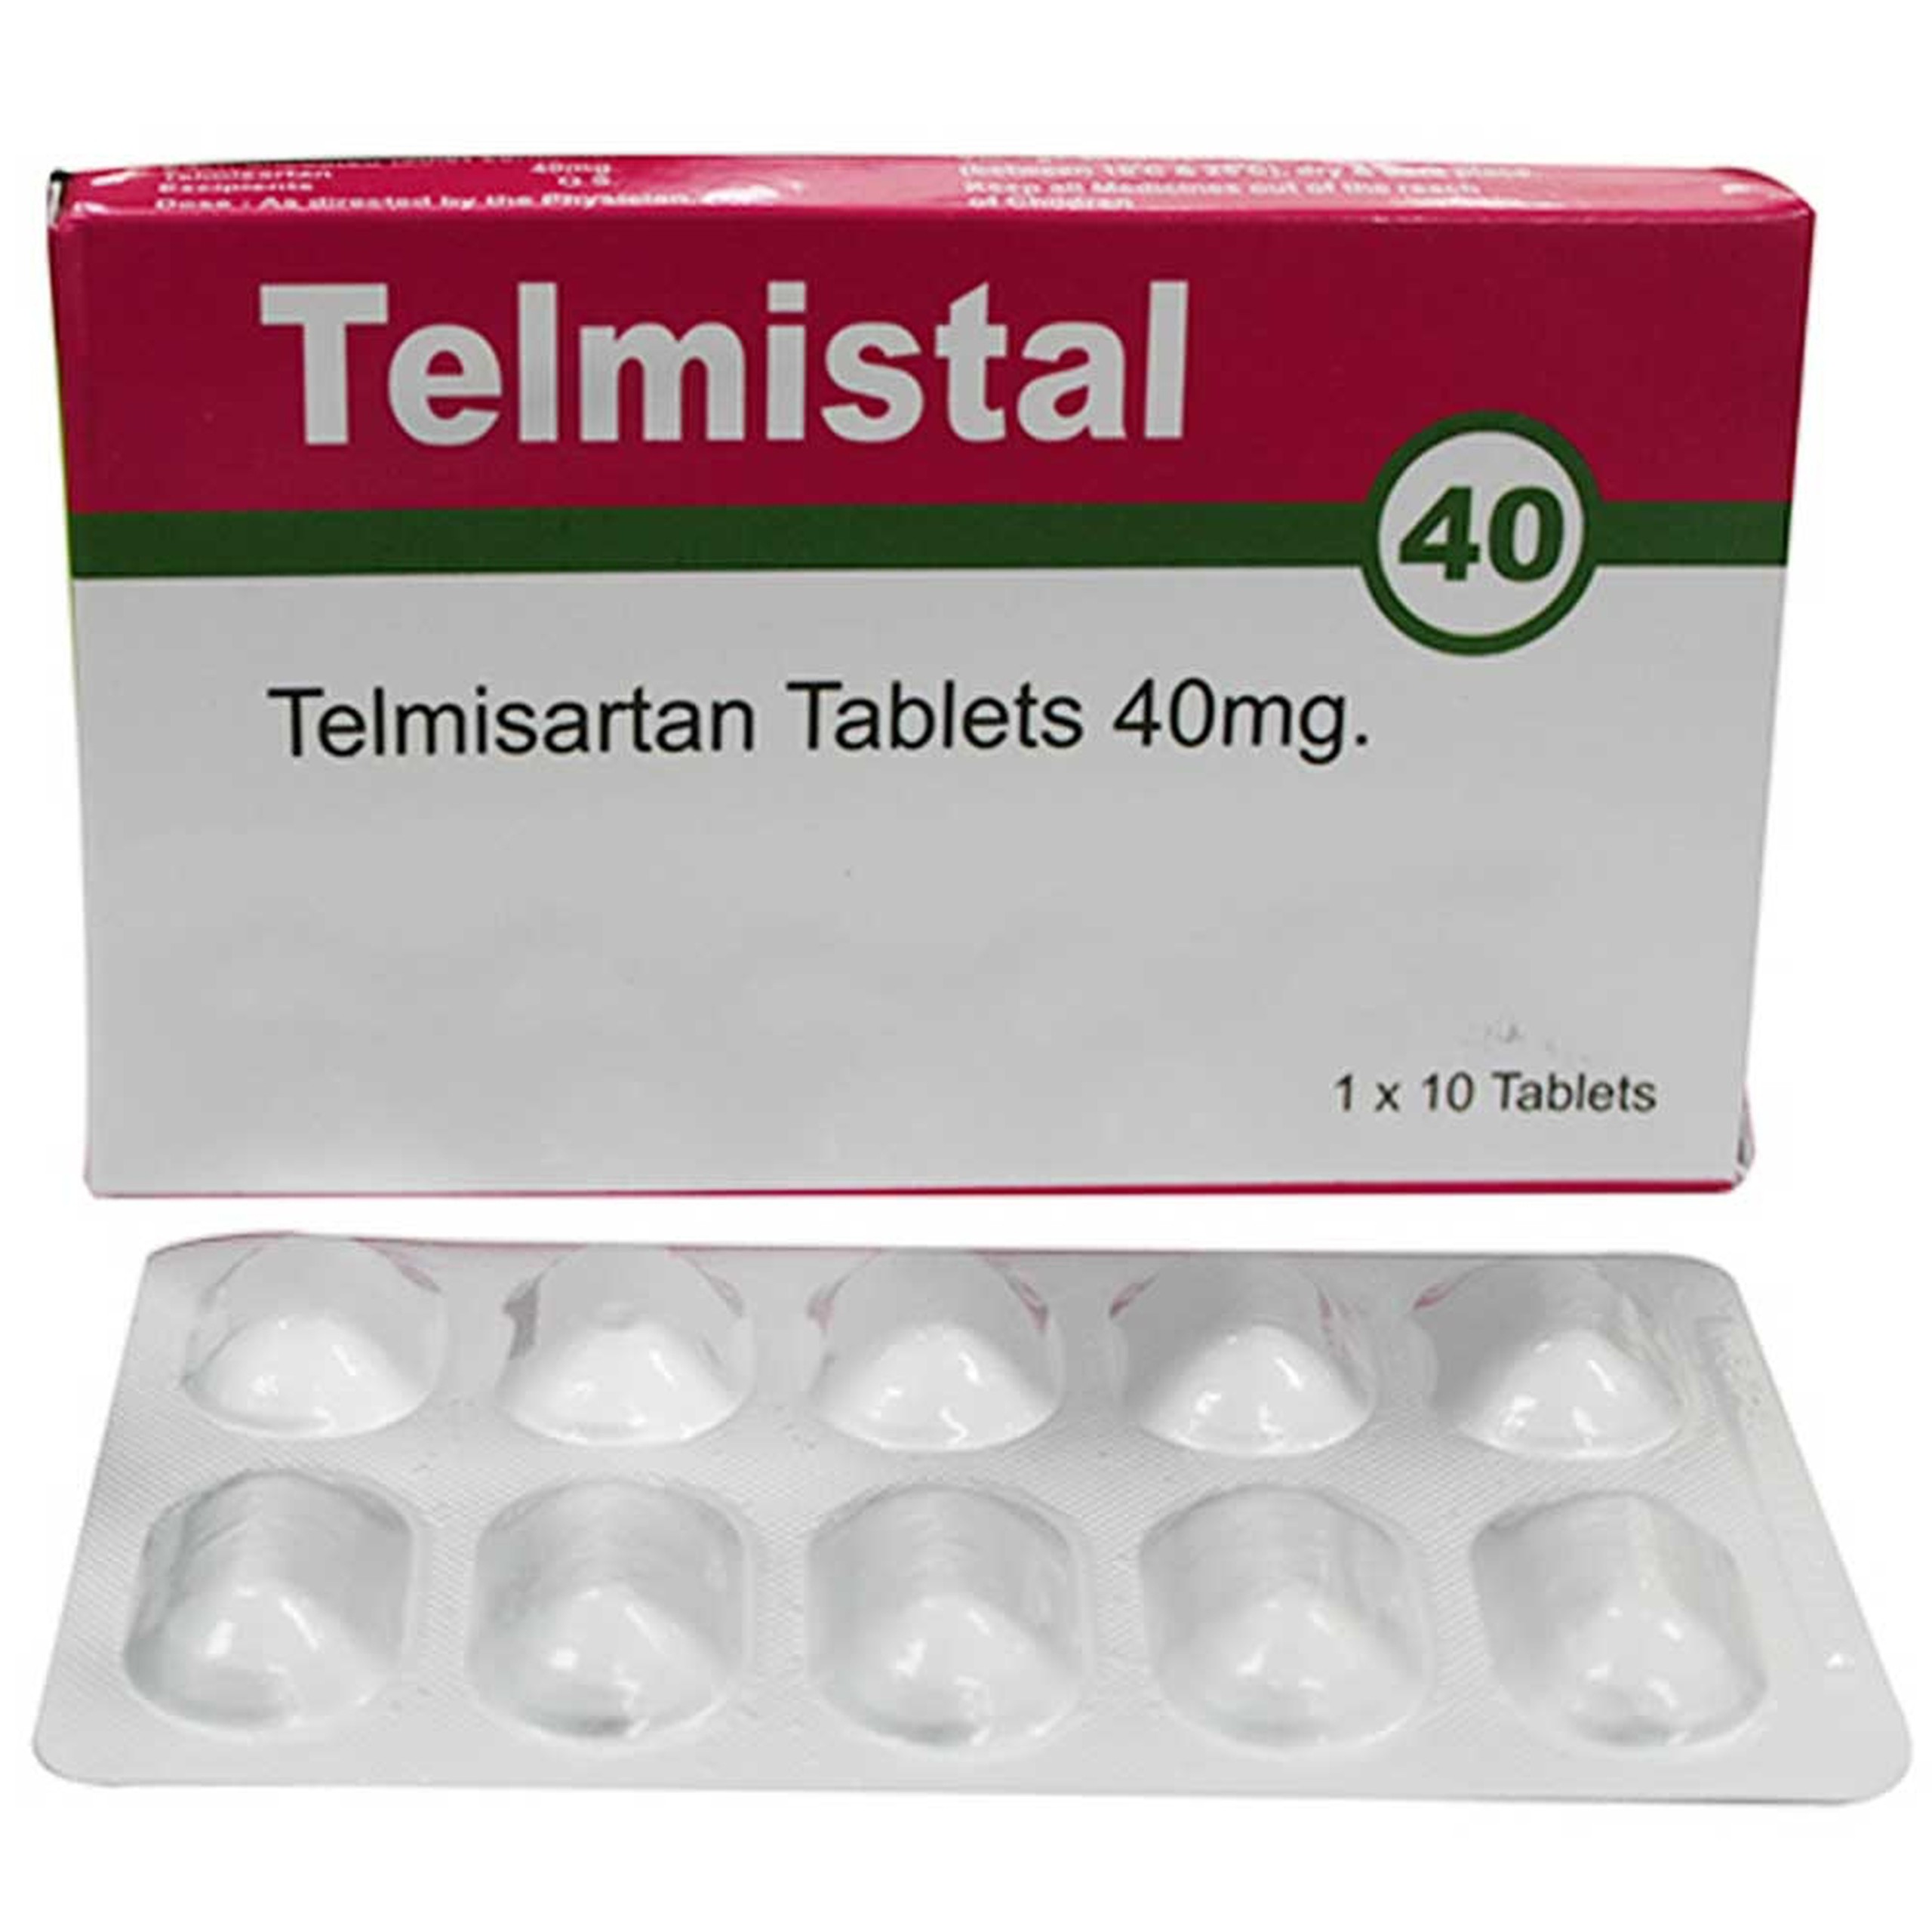 Thuốc Telmistal 40 Stallion điều trị tăng huyết áp (3 vỉ x 10 viên)